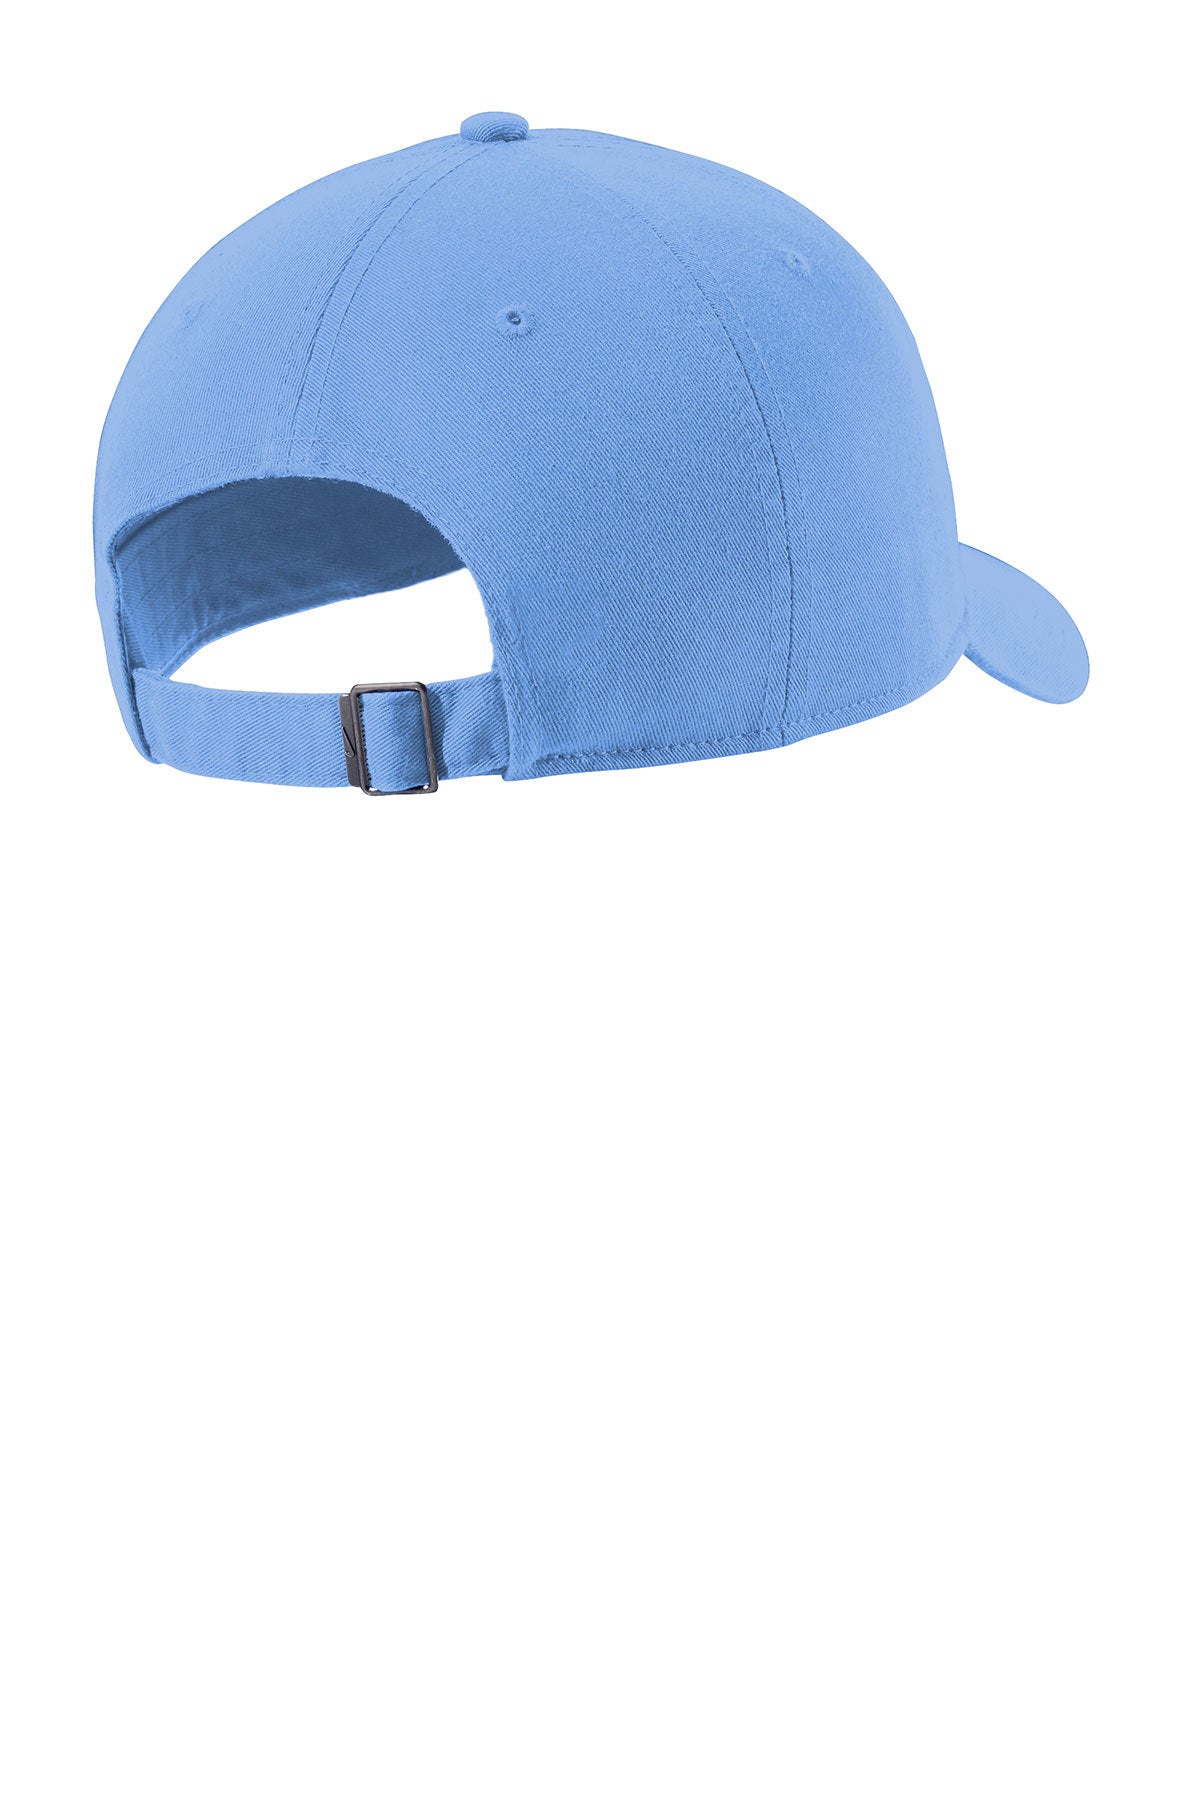 Nike Heritage 86 Customized Caps, Valor Blue